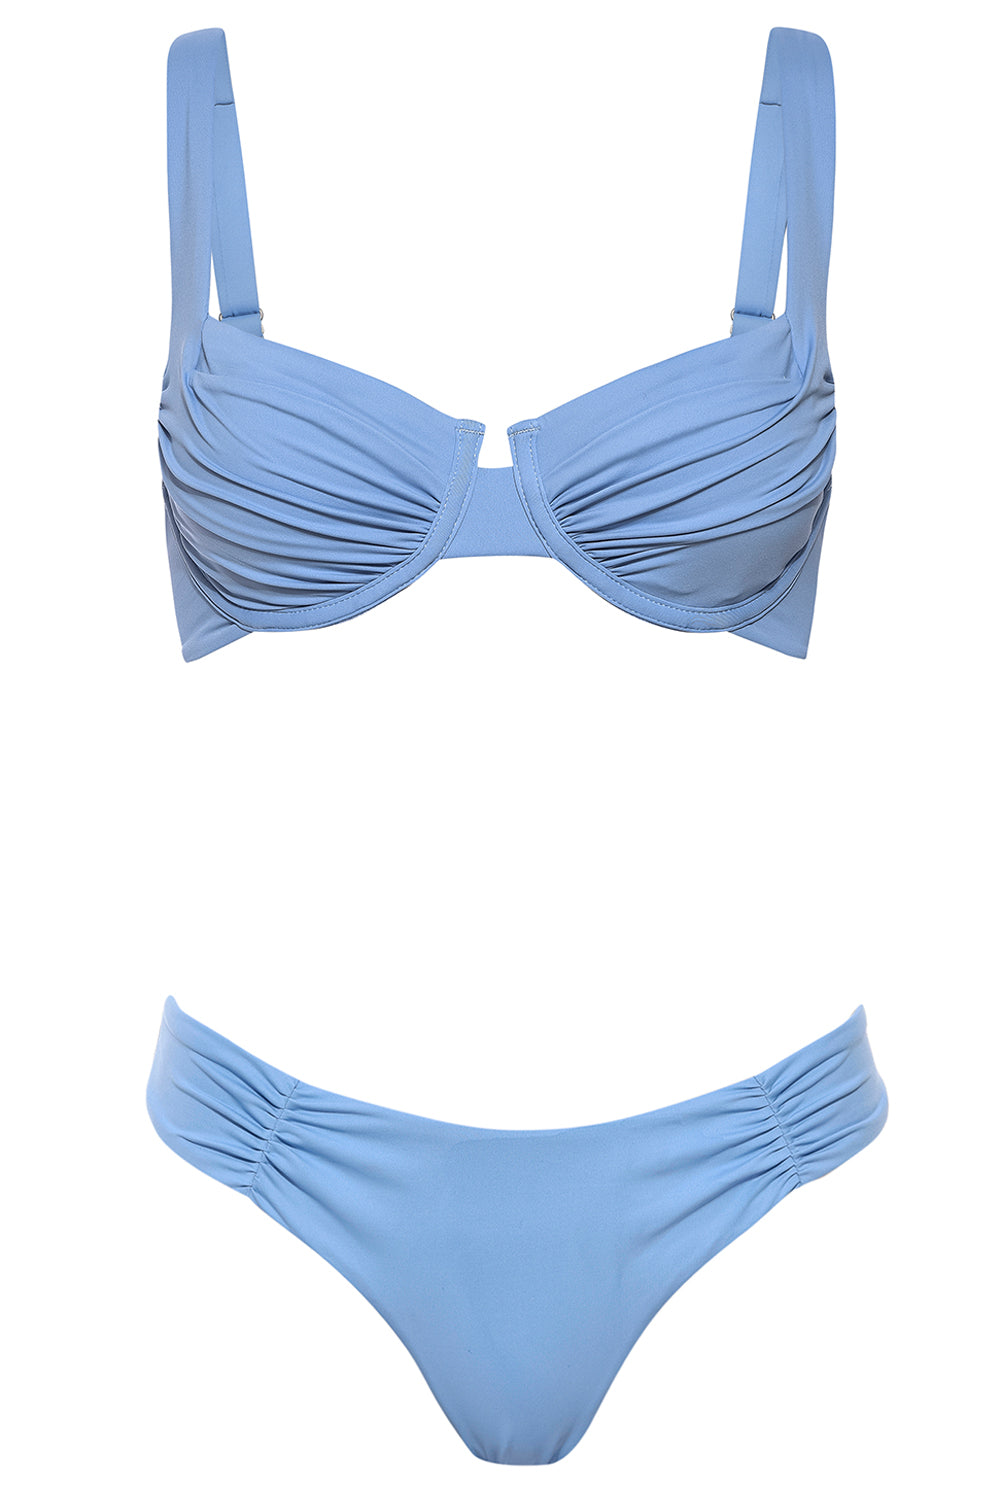 Aruba Bikini Baby Blue Set on white background front view.